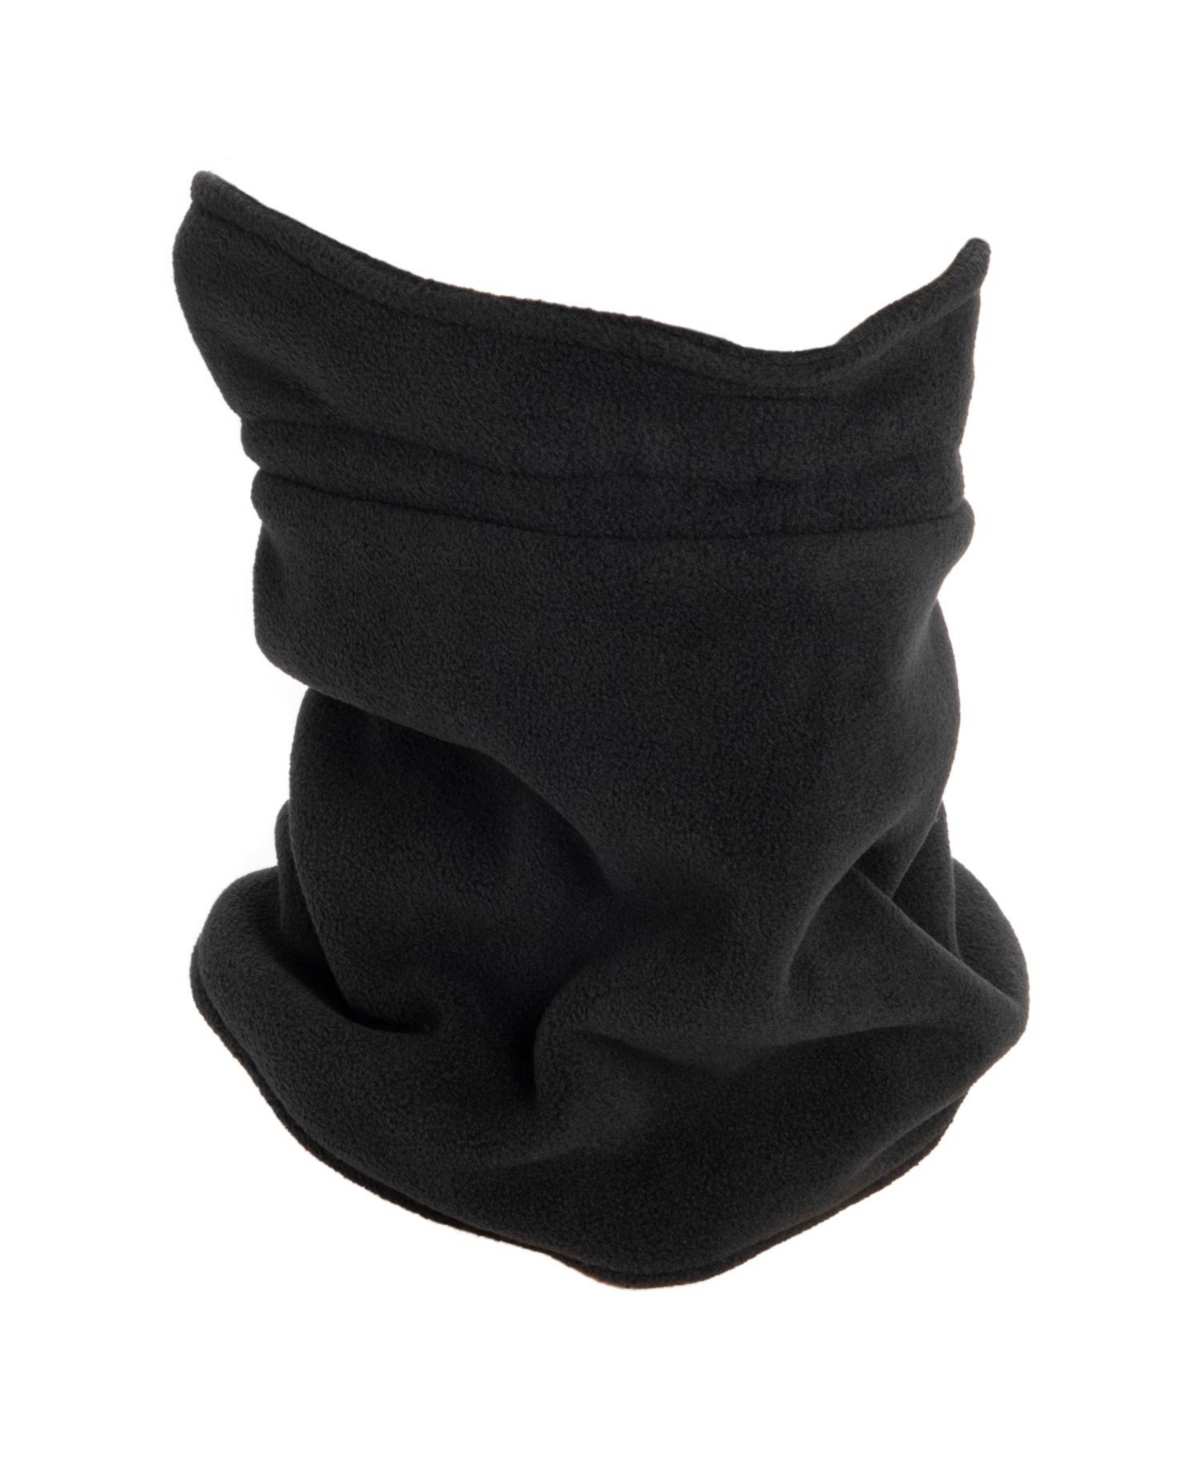 Unisex Fleece Neck Gaiter, Black, One Size - Oxford